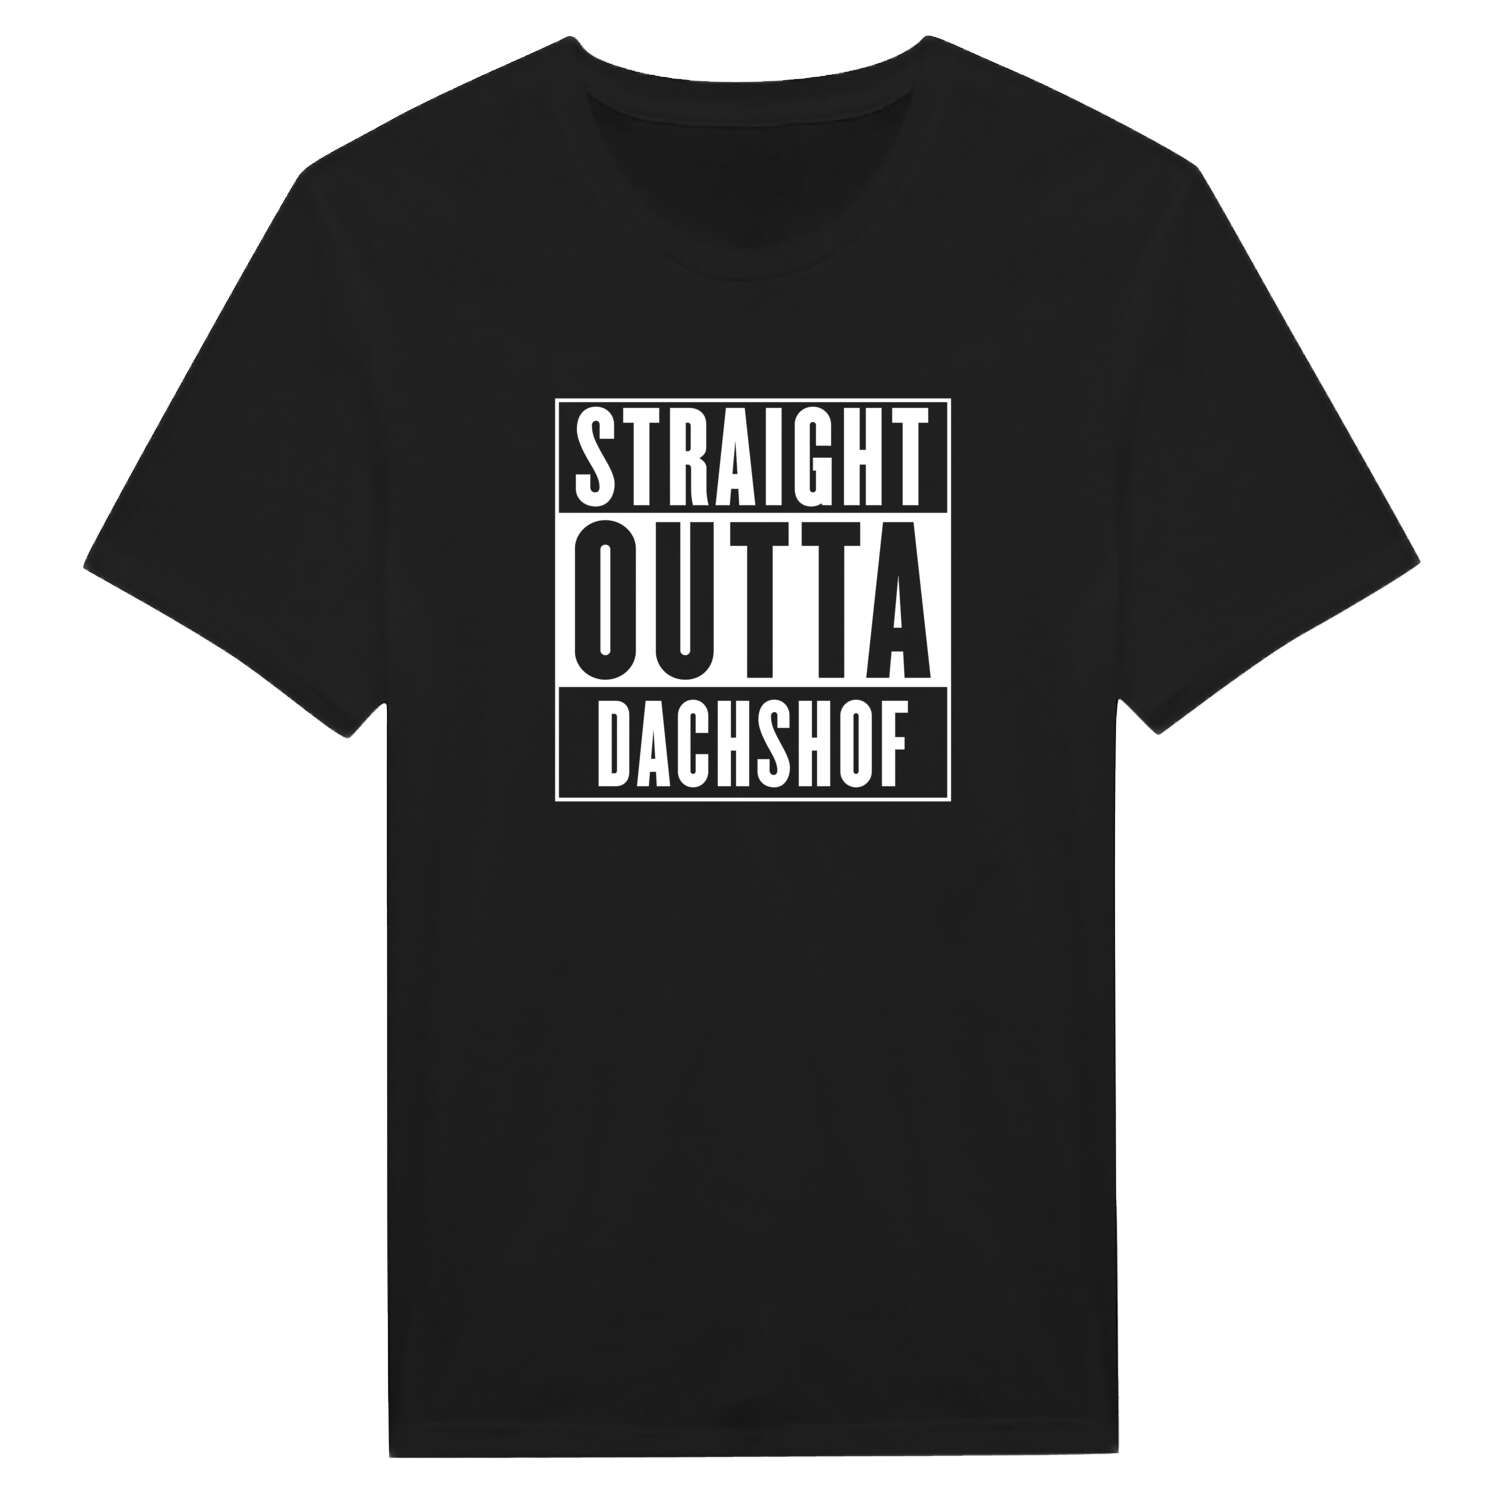 Dachshof T-Shirt »Straight Outta«